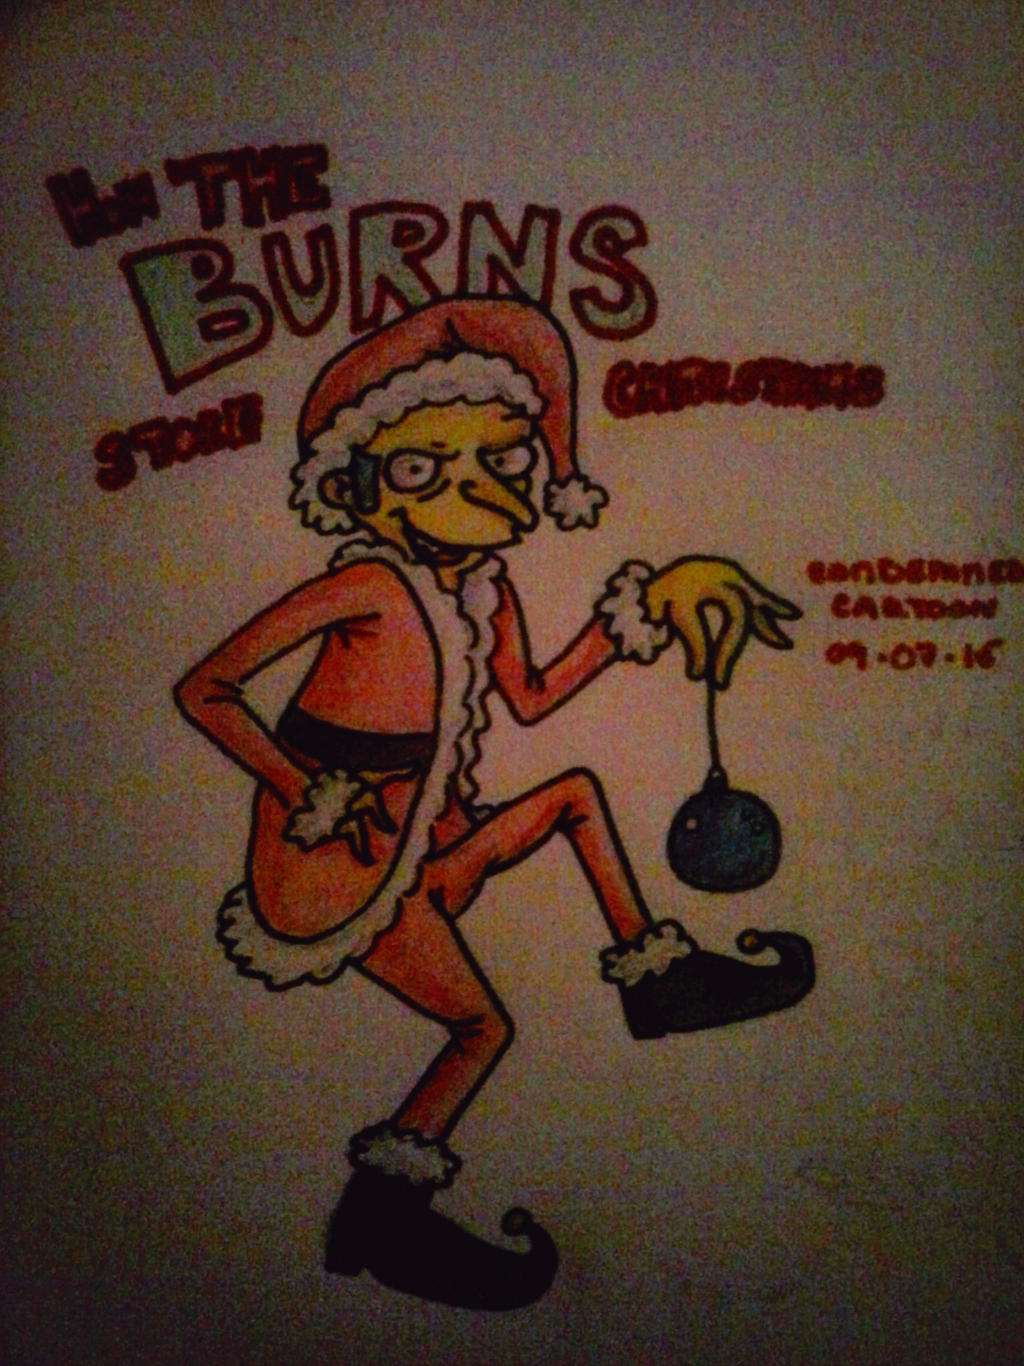 How the Burns Stole Christmas